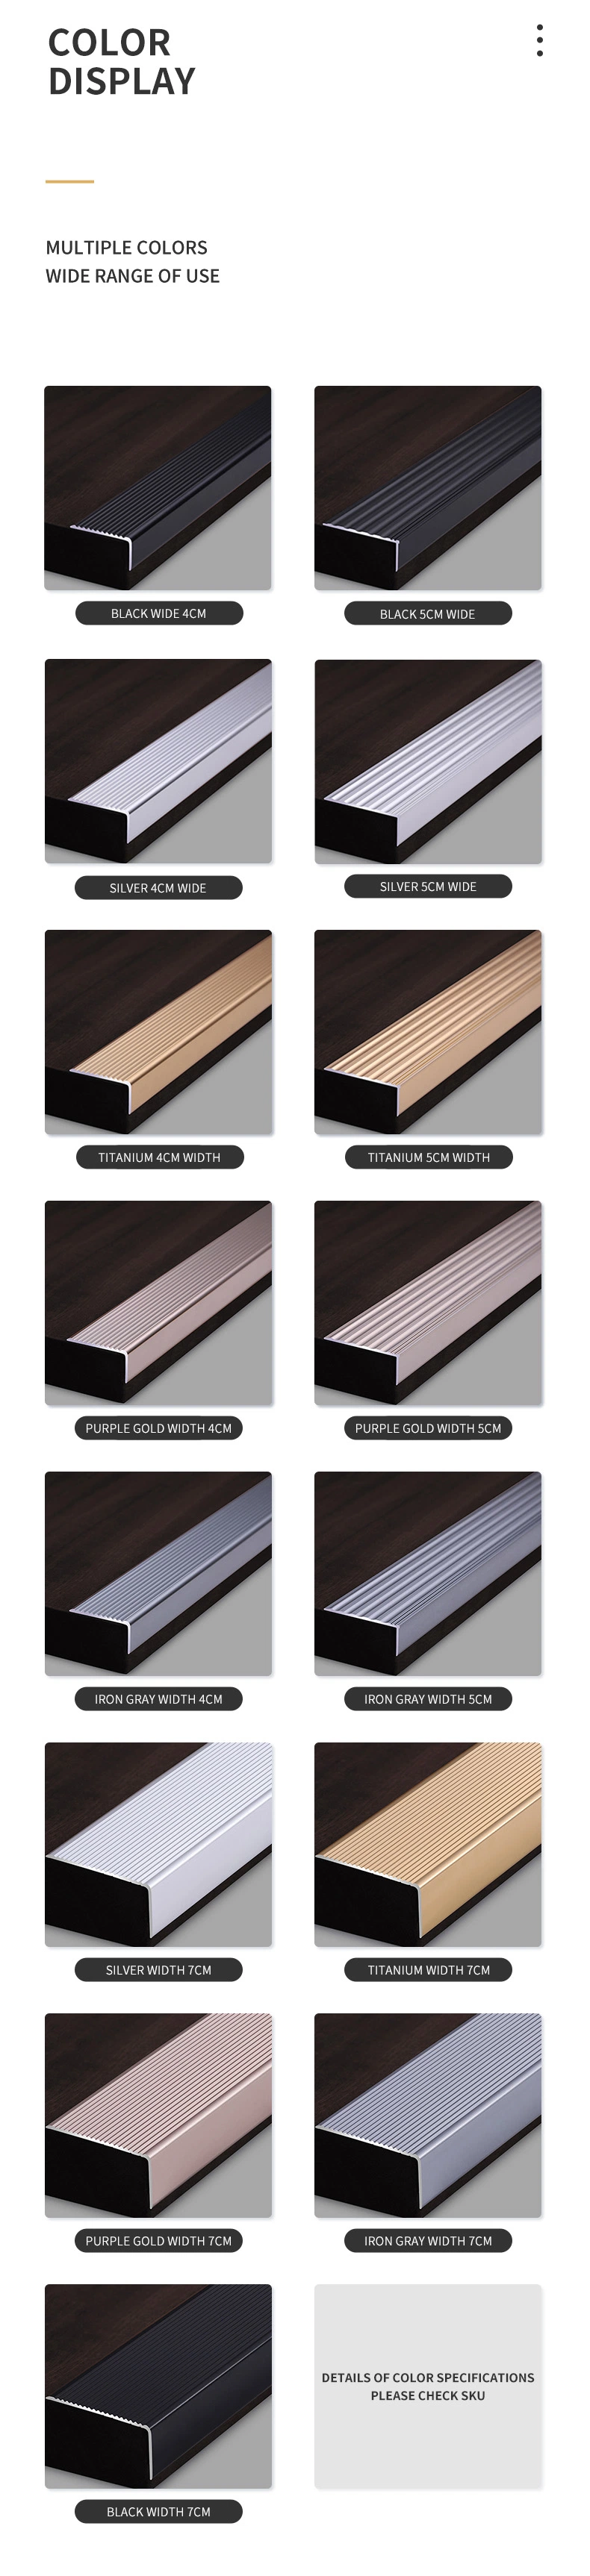 Luxury Aluminium Profile Commercial Stair Edge Nosing